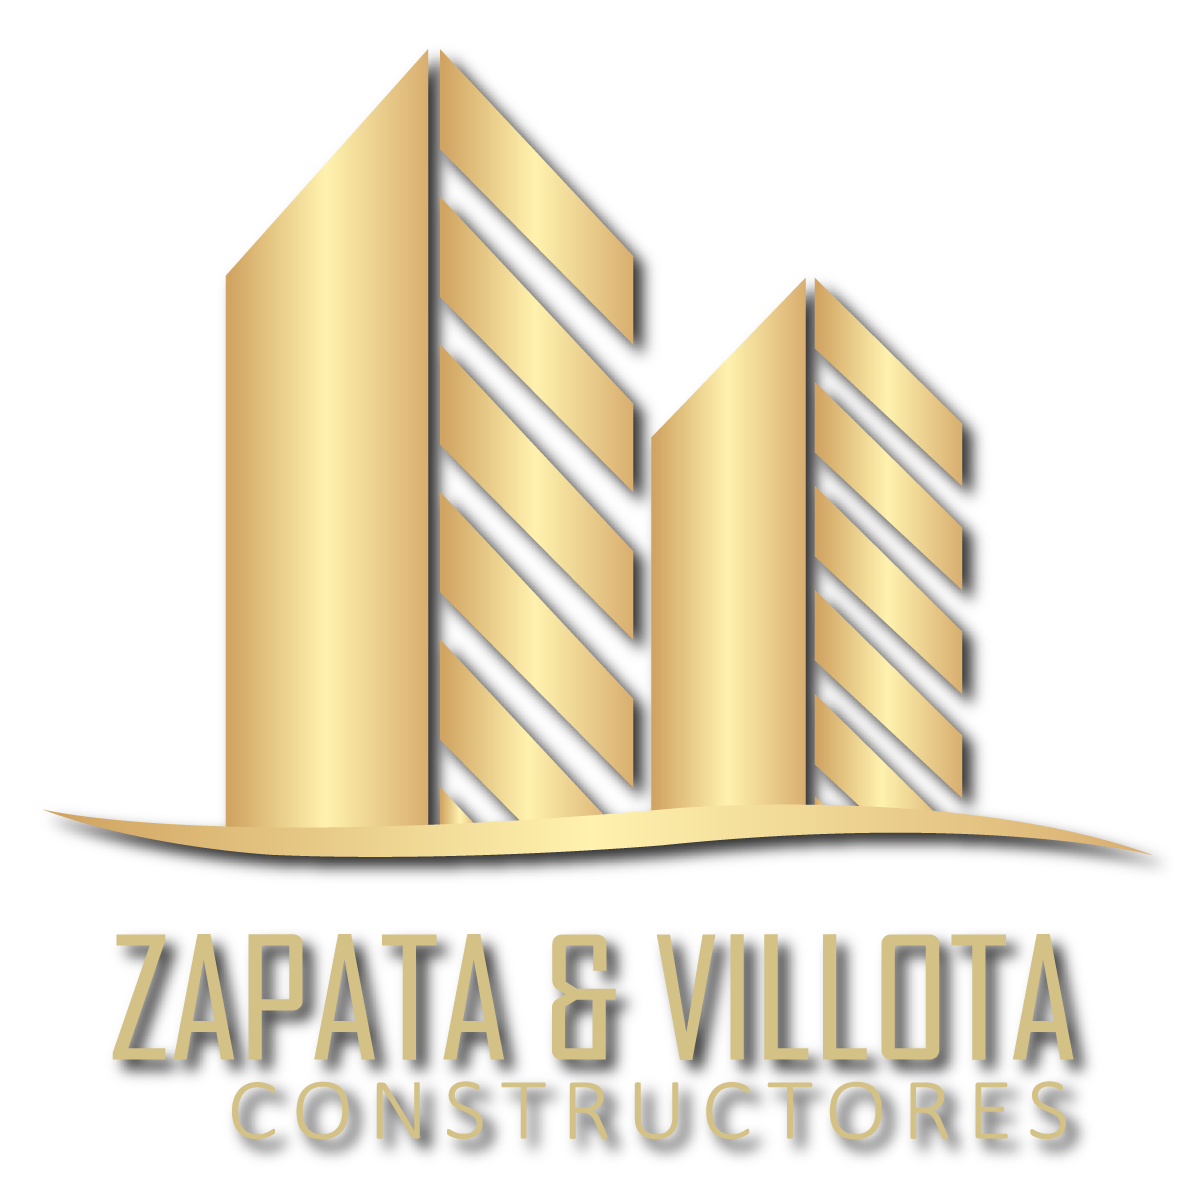 ZAPATA VILLOTA CONSTRUCTORES